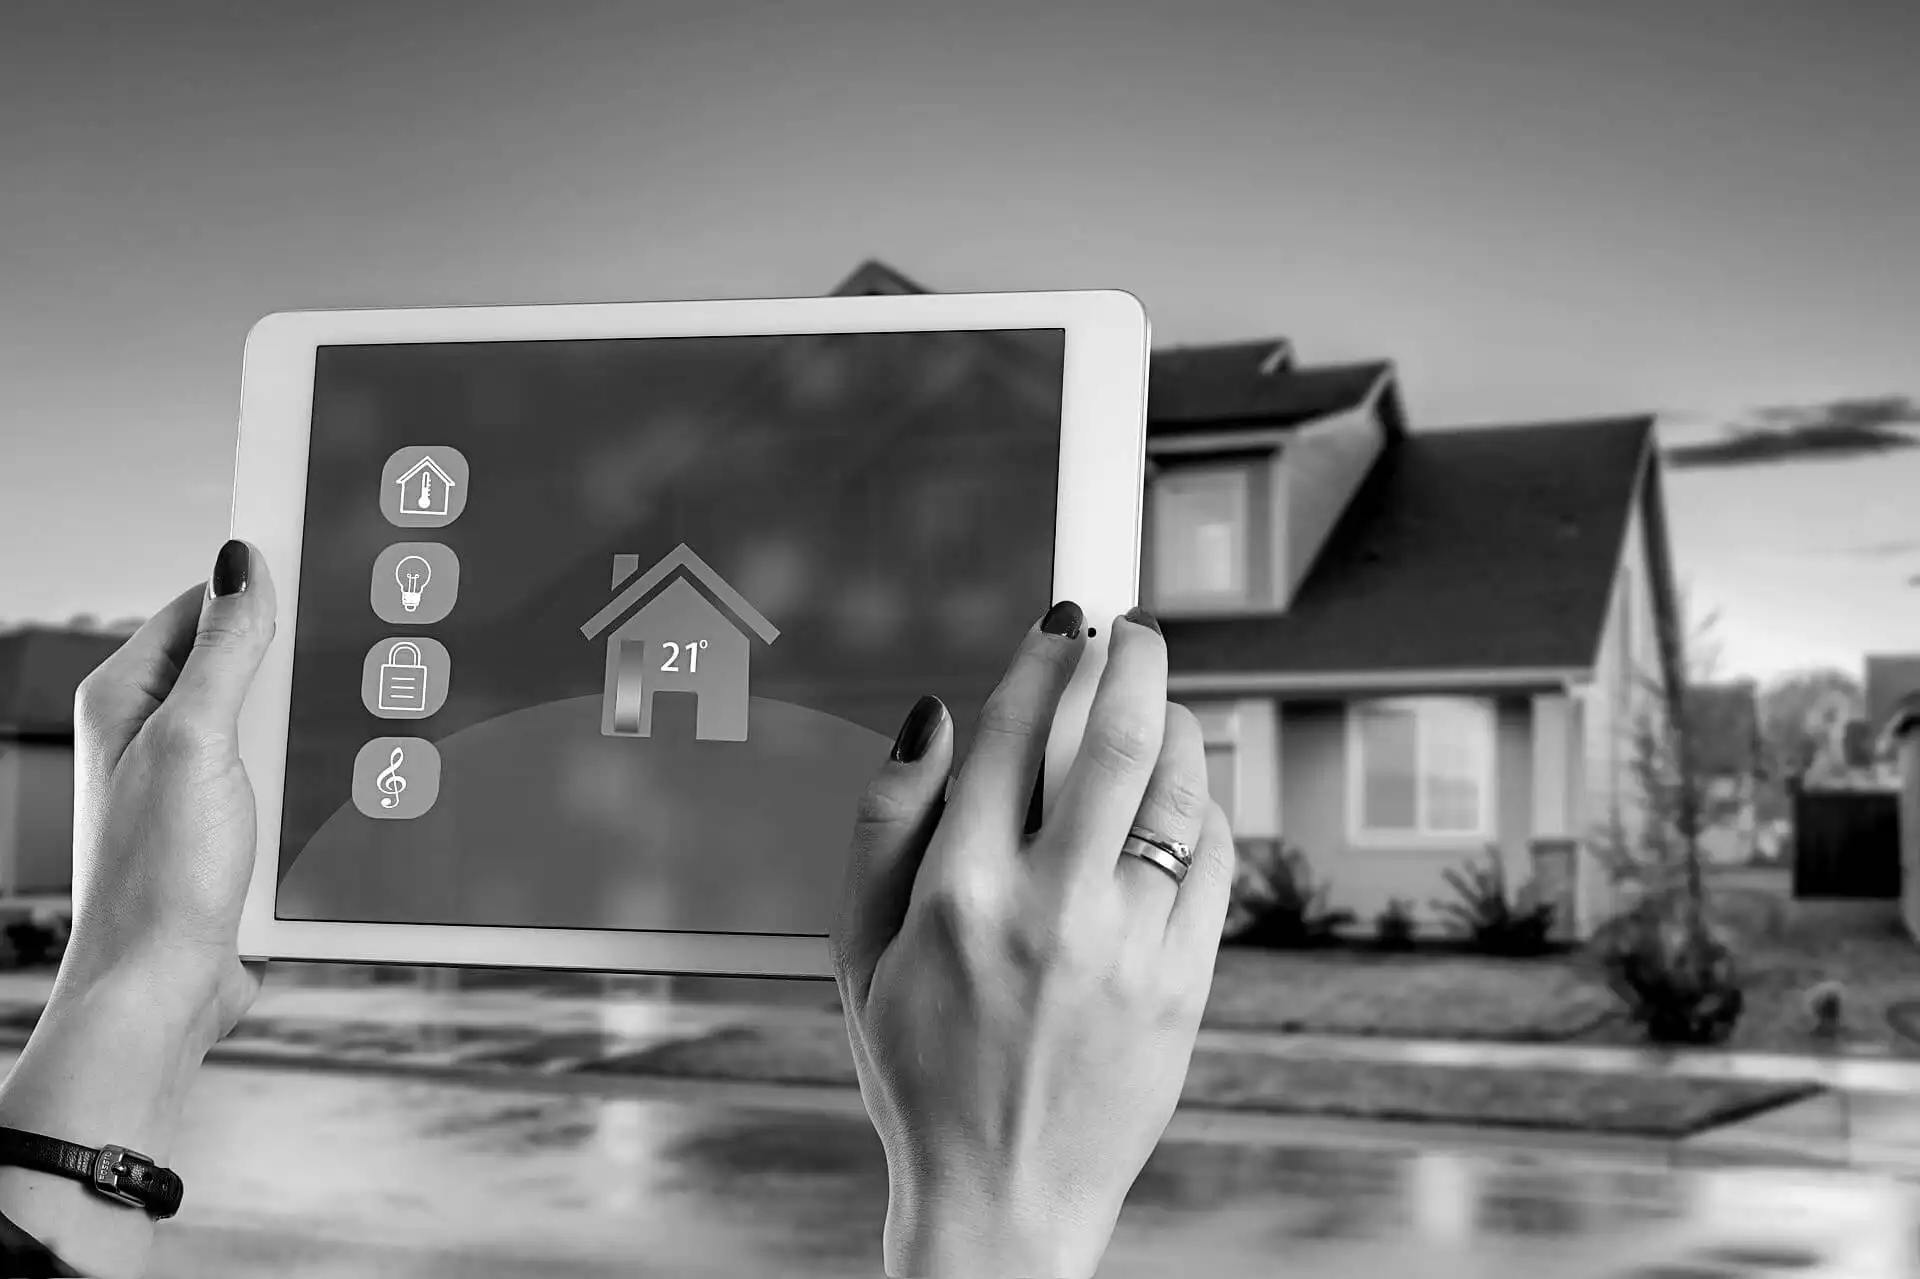 Smarthome technológie, ovládanie domu na diaľku, pomocou mobilnej aplikácie